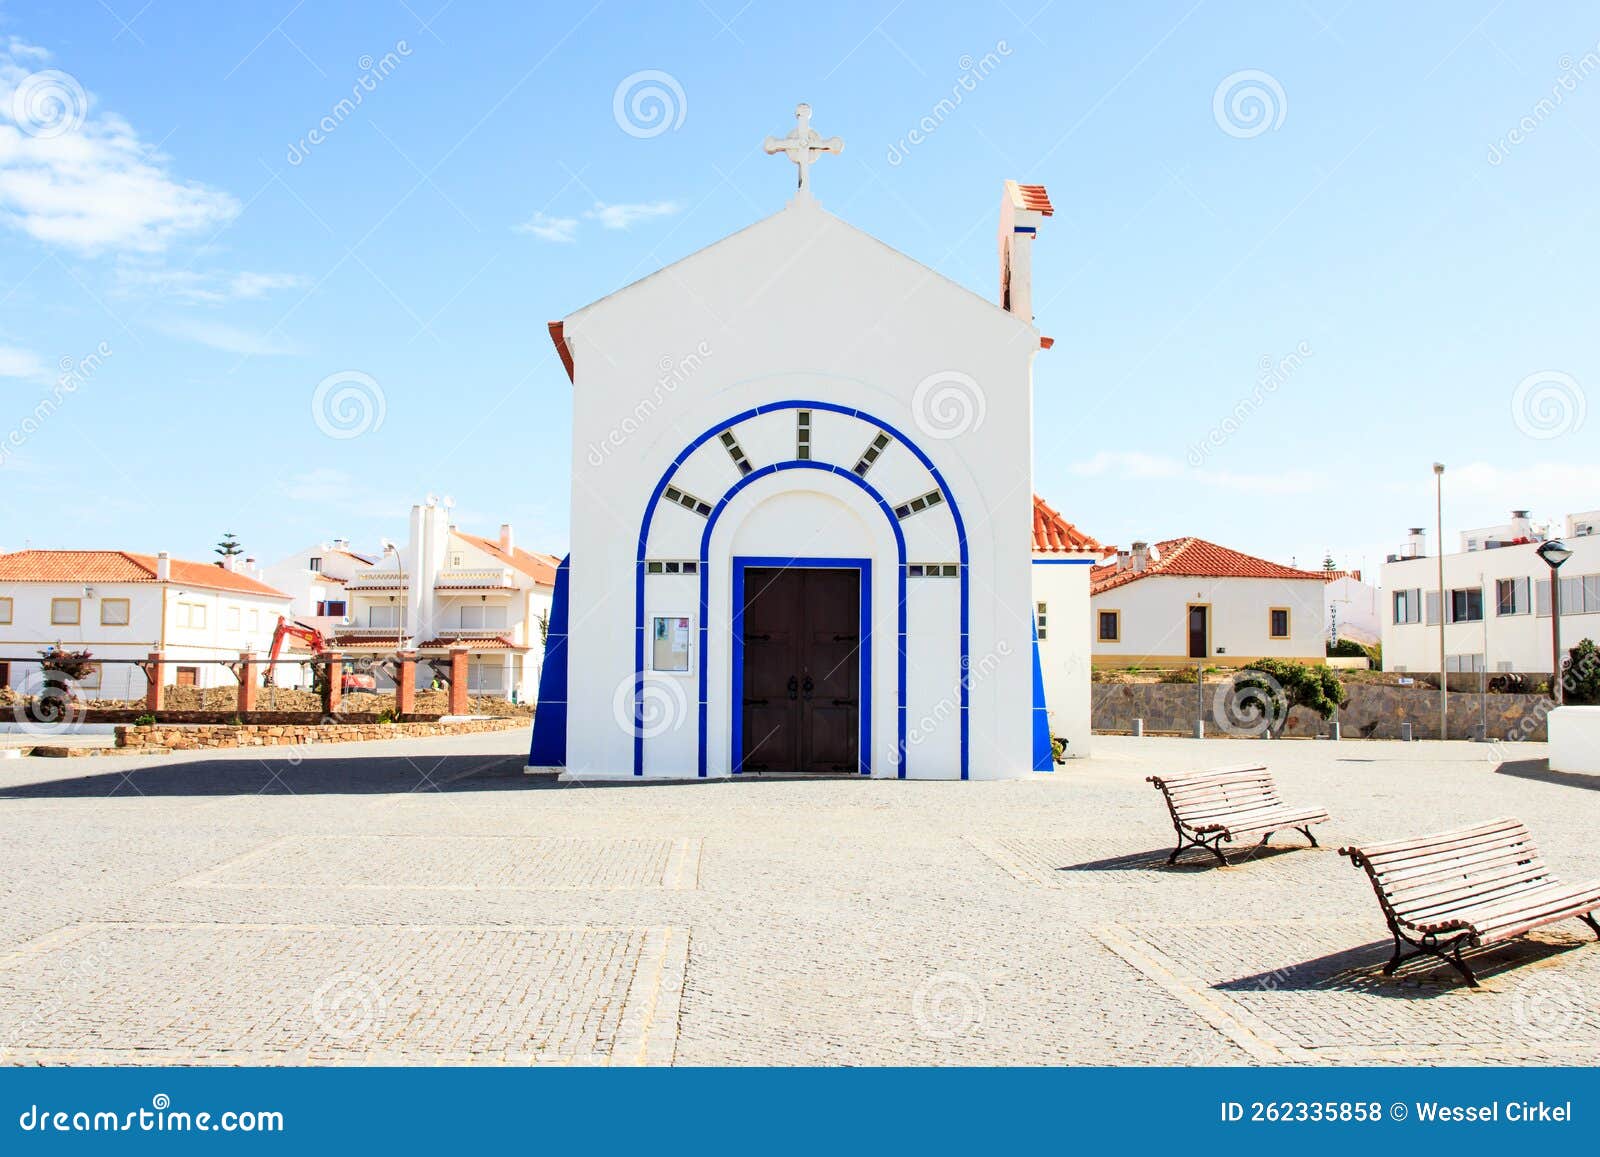 capela de nossa senhora do mar of zambujeira do mar, portugal